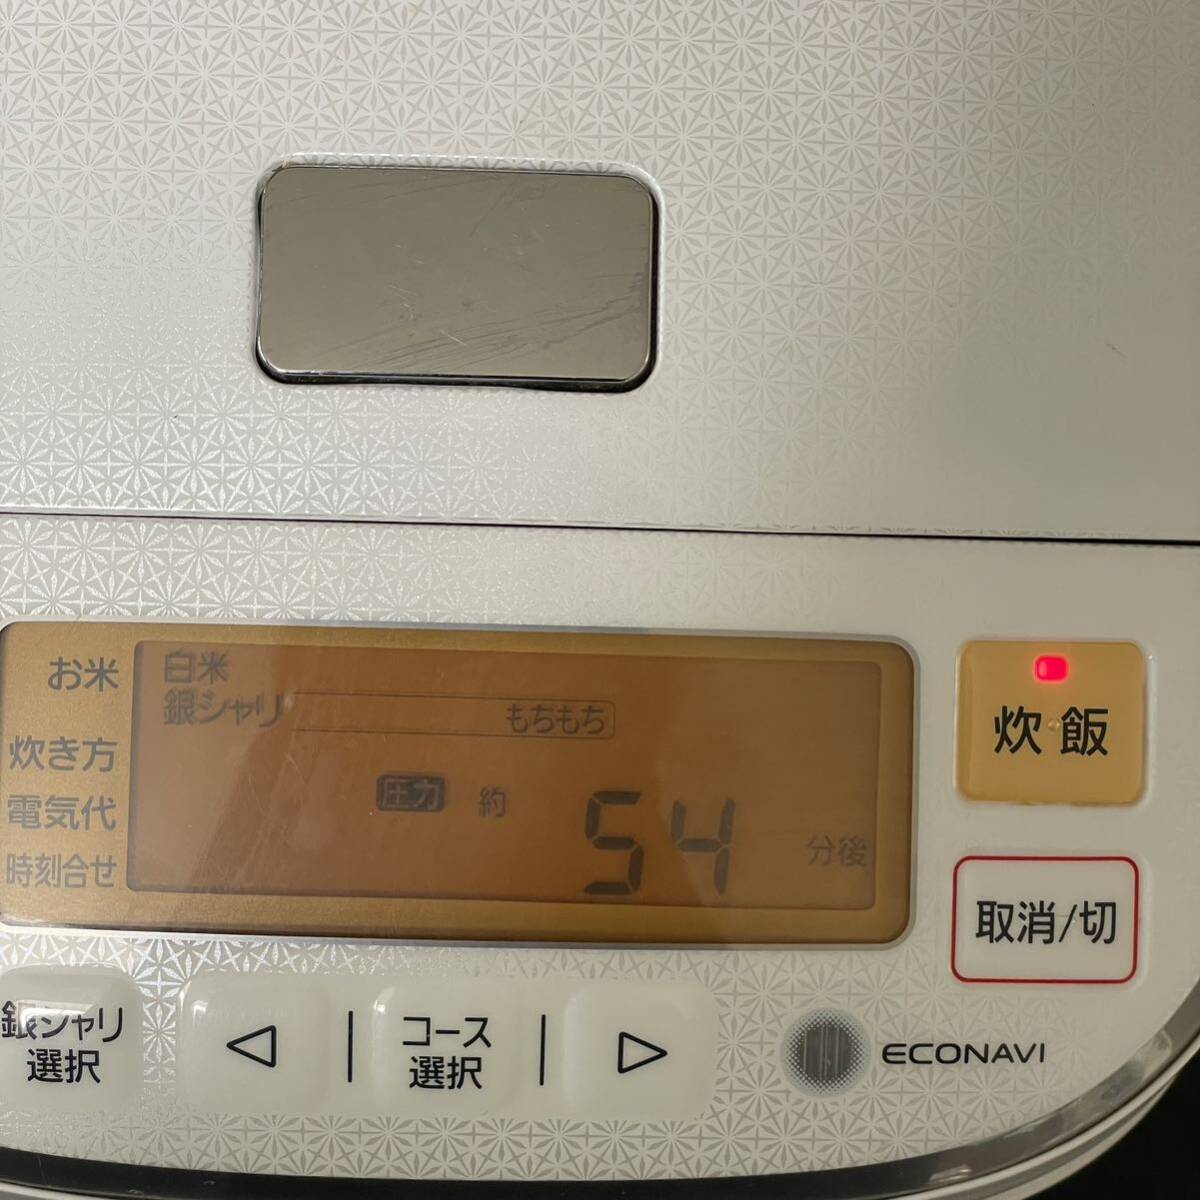 Panasonic Panasonic rice cooker SR-PA105 5.5... changeable pressure IH jar rice cooker .....2015 year made white 